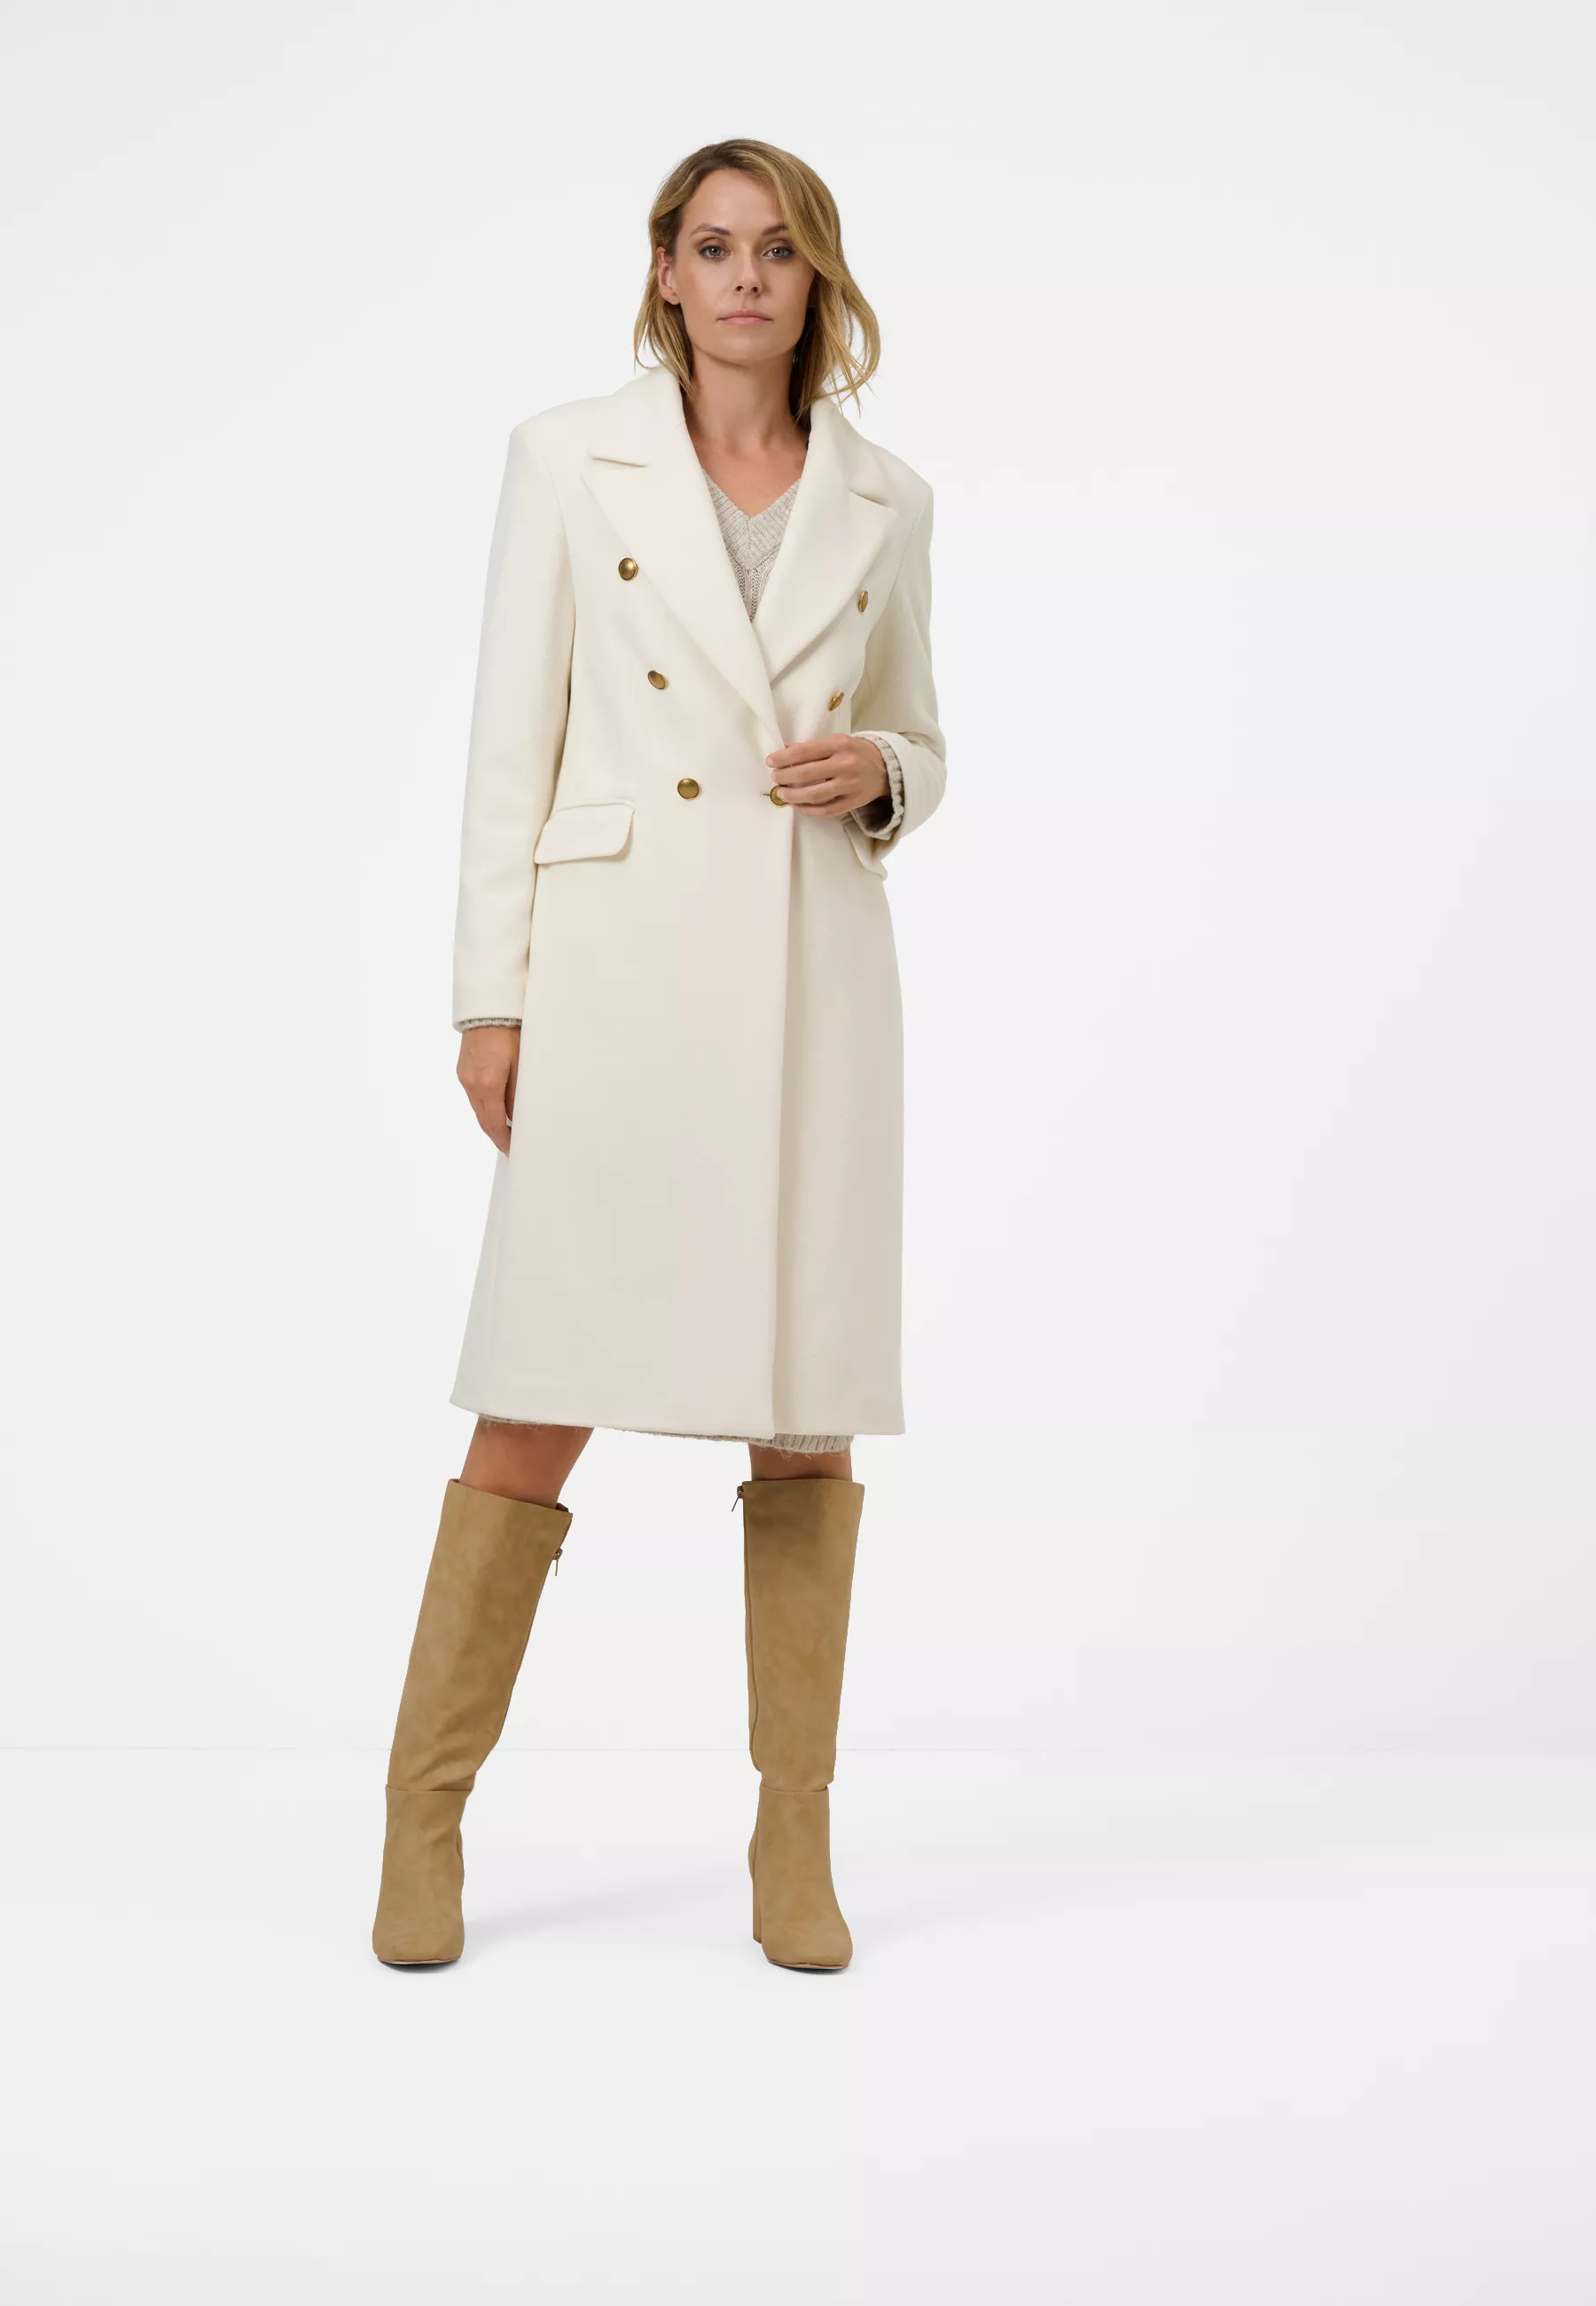 Damen Textil Mantel Giulia in Weiß von Ricano, Vollansicht am Model